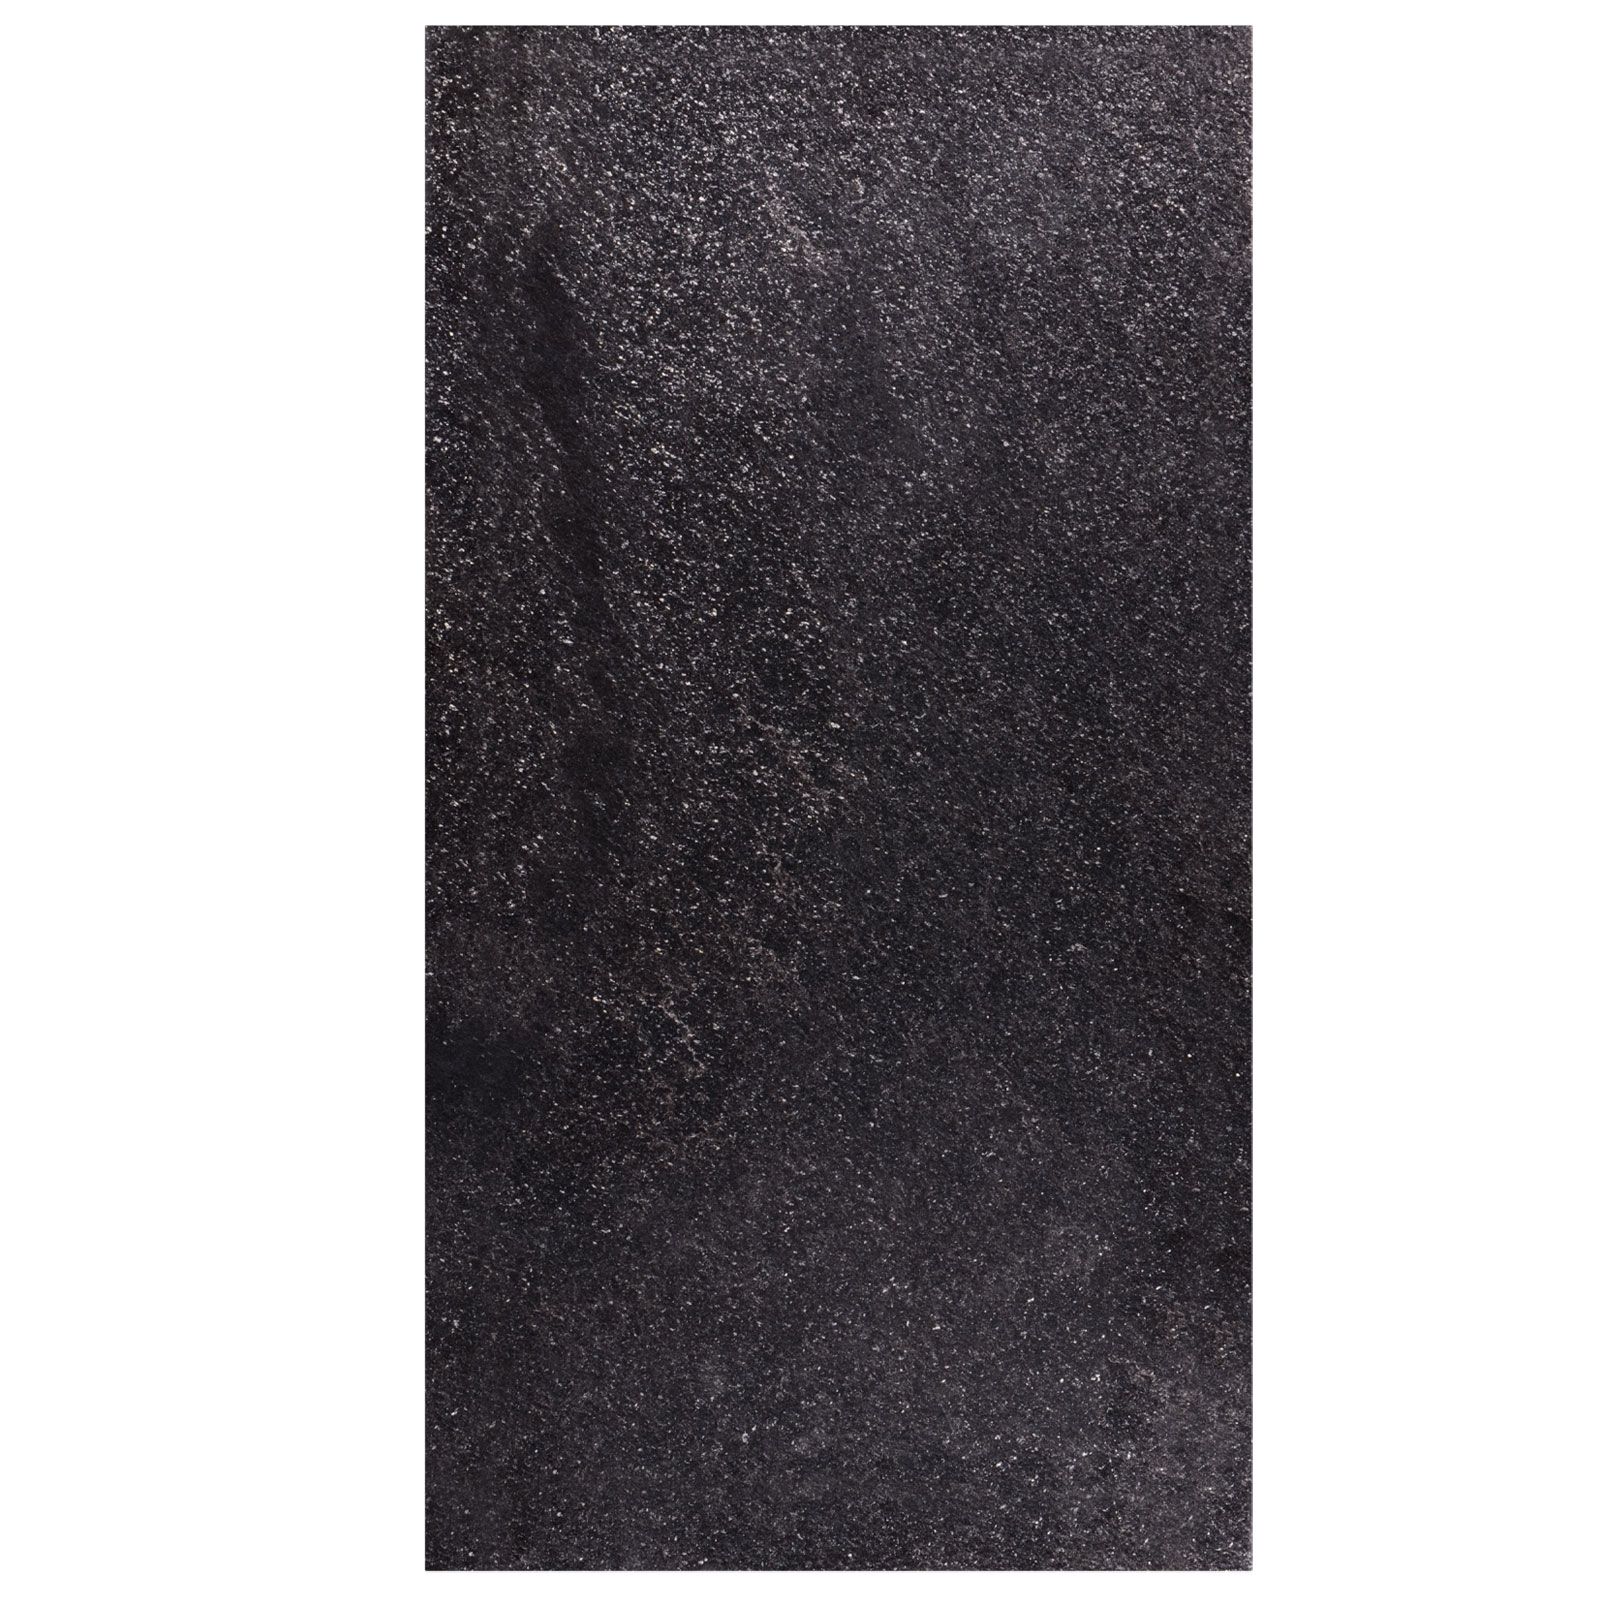 Płytki Kamienne Kwarcyt Black Galaxy Leather 60x40x1,4 cm